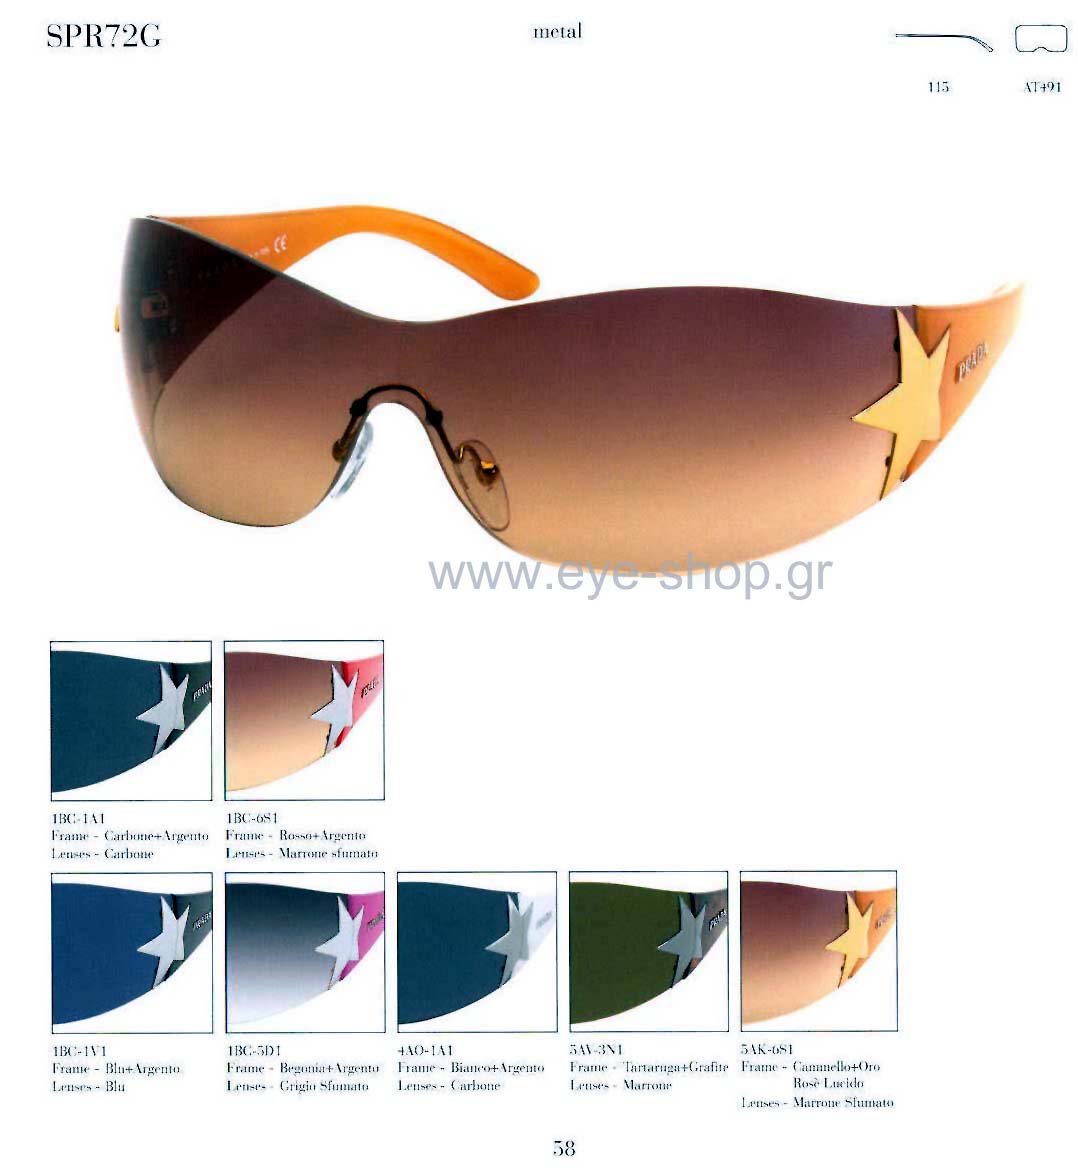 Sunglasses Prada 72GS 5AV3N1